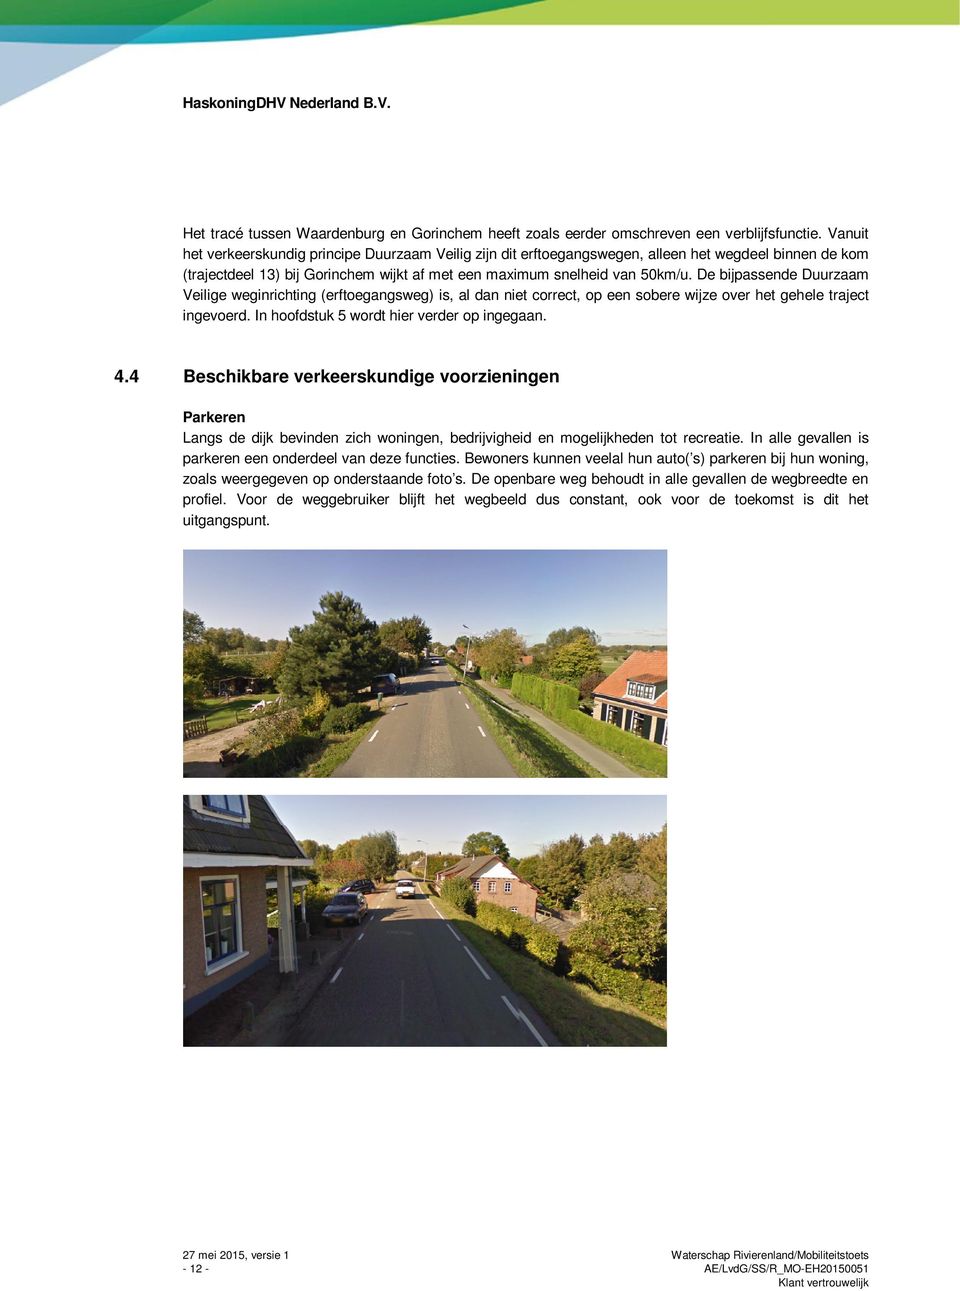 De bijpassende Duurzaam Veilige weginrichting (erftoegangsweg) is, al dan niet correct, op een sobere wijze over het gehele traject ingevoerd. In hoofdstuk 5 wordt hier verder op ingegaan. 4.